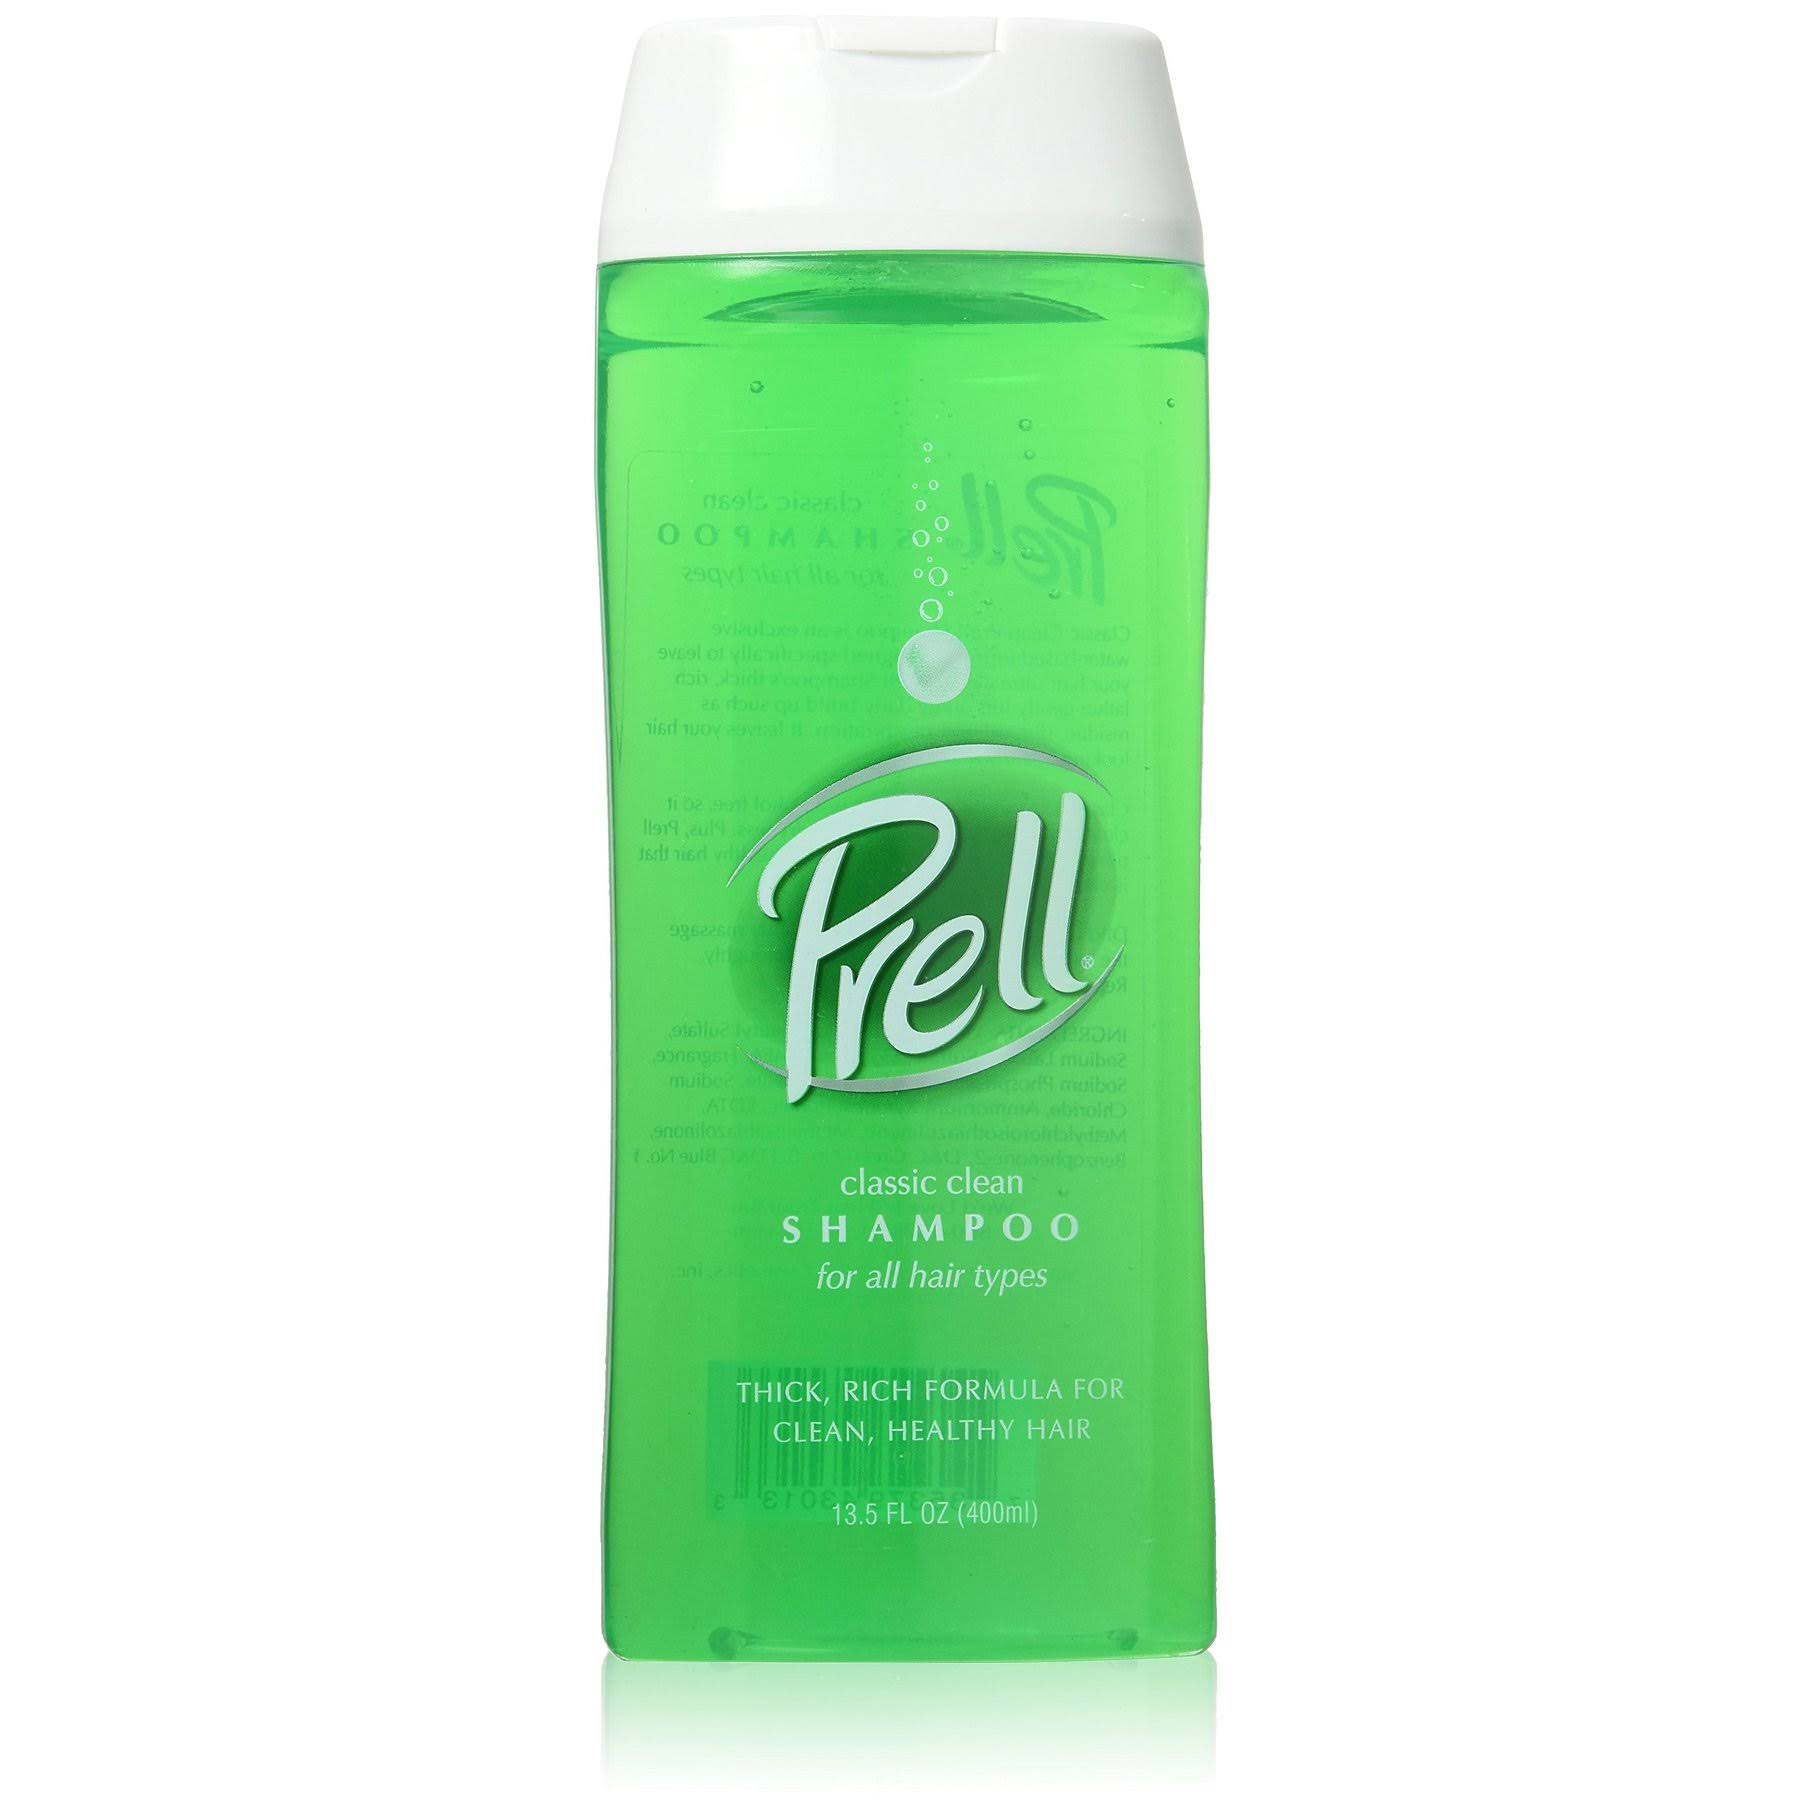 Prell Classic Clean Shampoo - 13.5oz